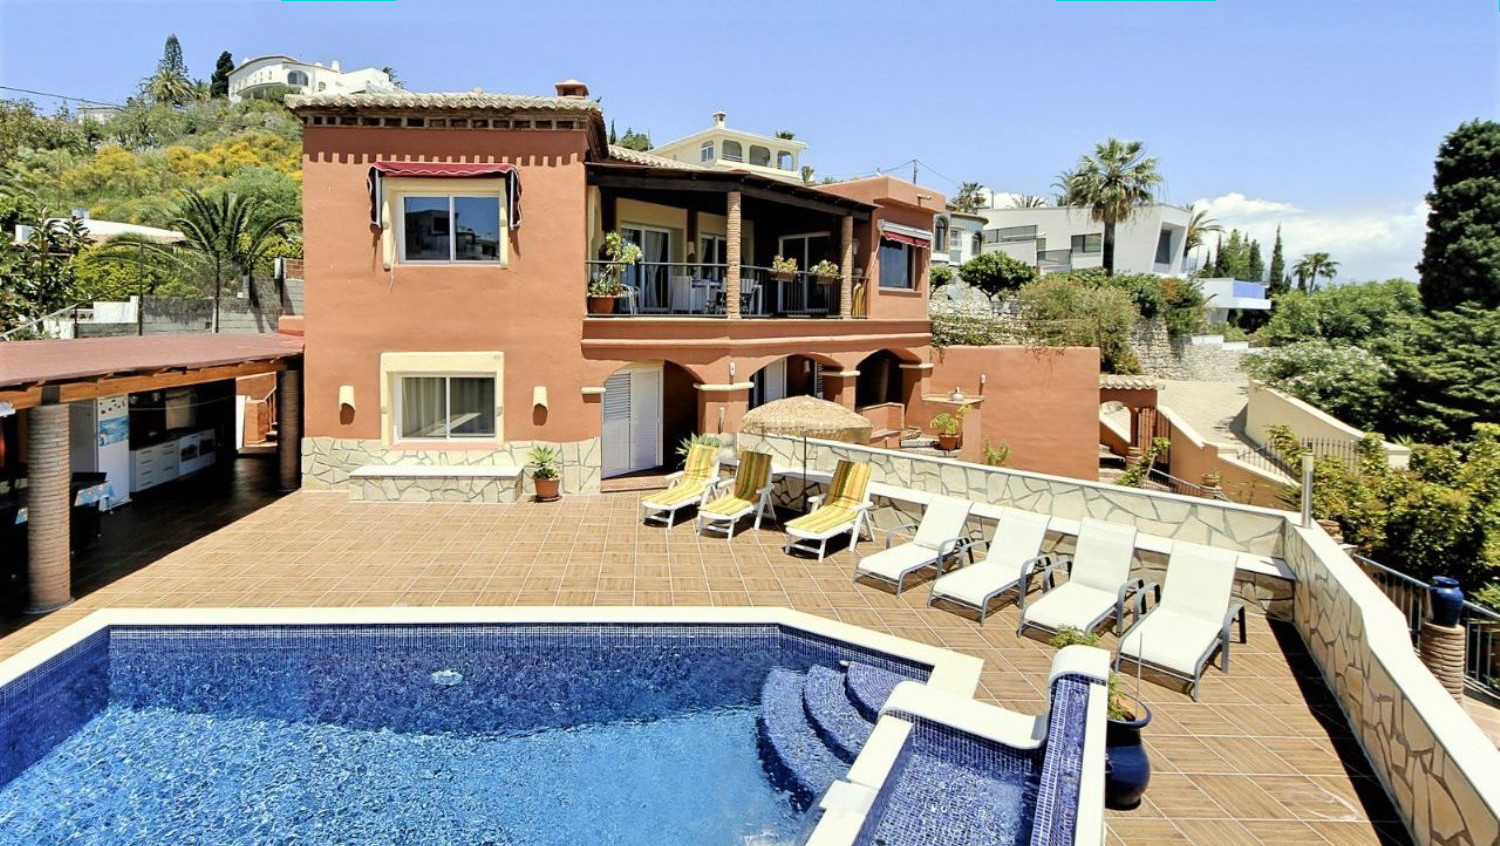 Luxury villa for sale in the Monte de Los Almendros urbanization in Salobreña